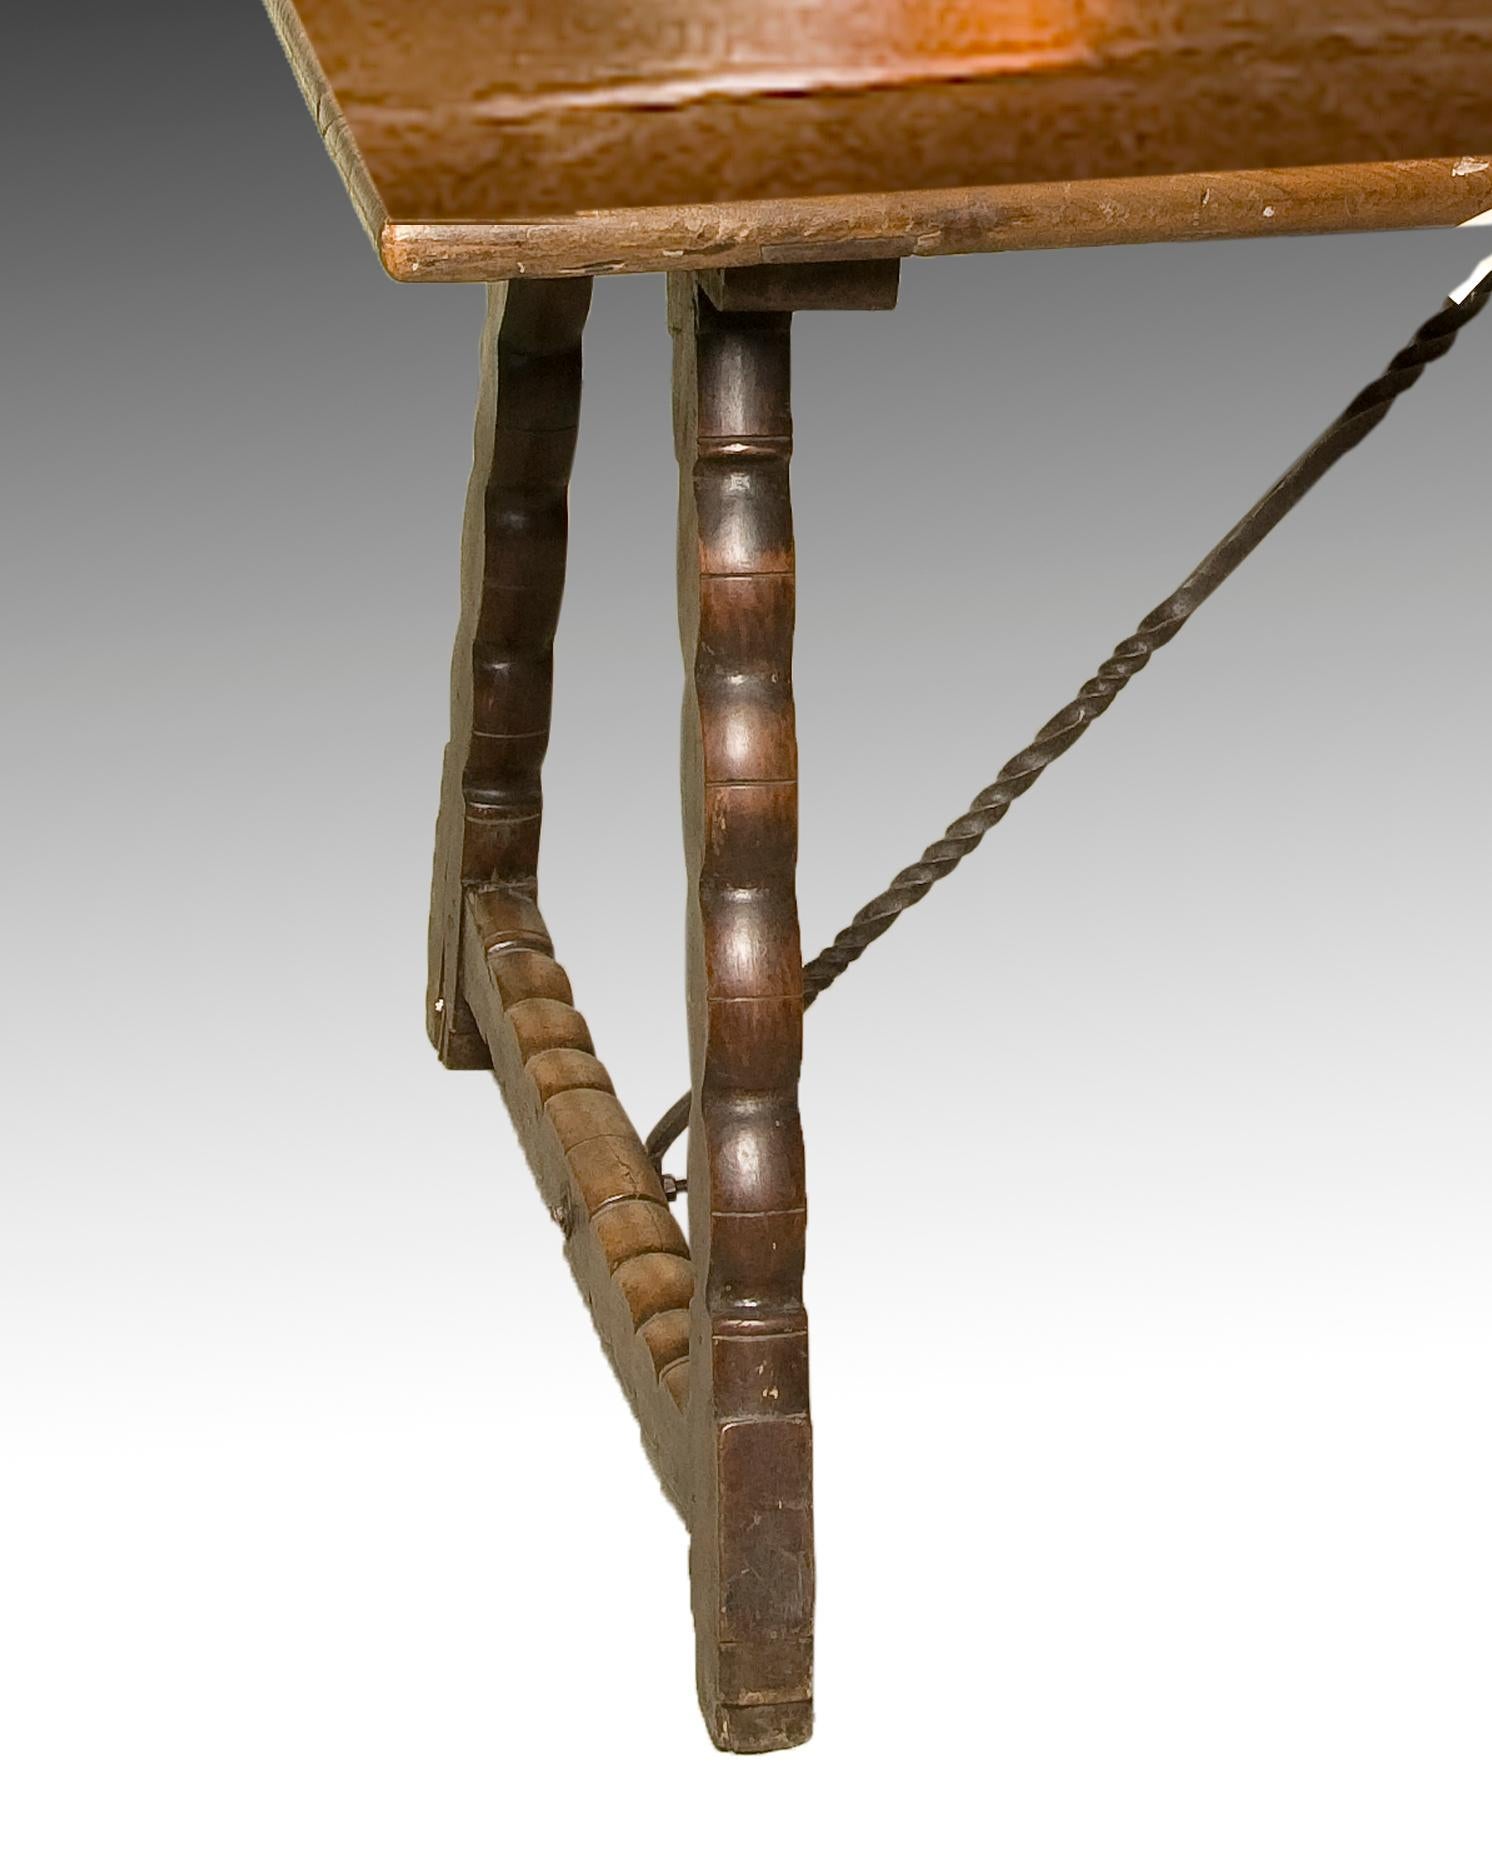 Table de salle à manger en noyer avec attaches en fer forgé. XVIIIe siècle.
Table de salle à manger au plateau rectangulaire et lisse reposant sur des pieds qui suivent, simplifiés, les exemples les plus courants du baroque dit 